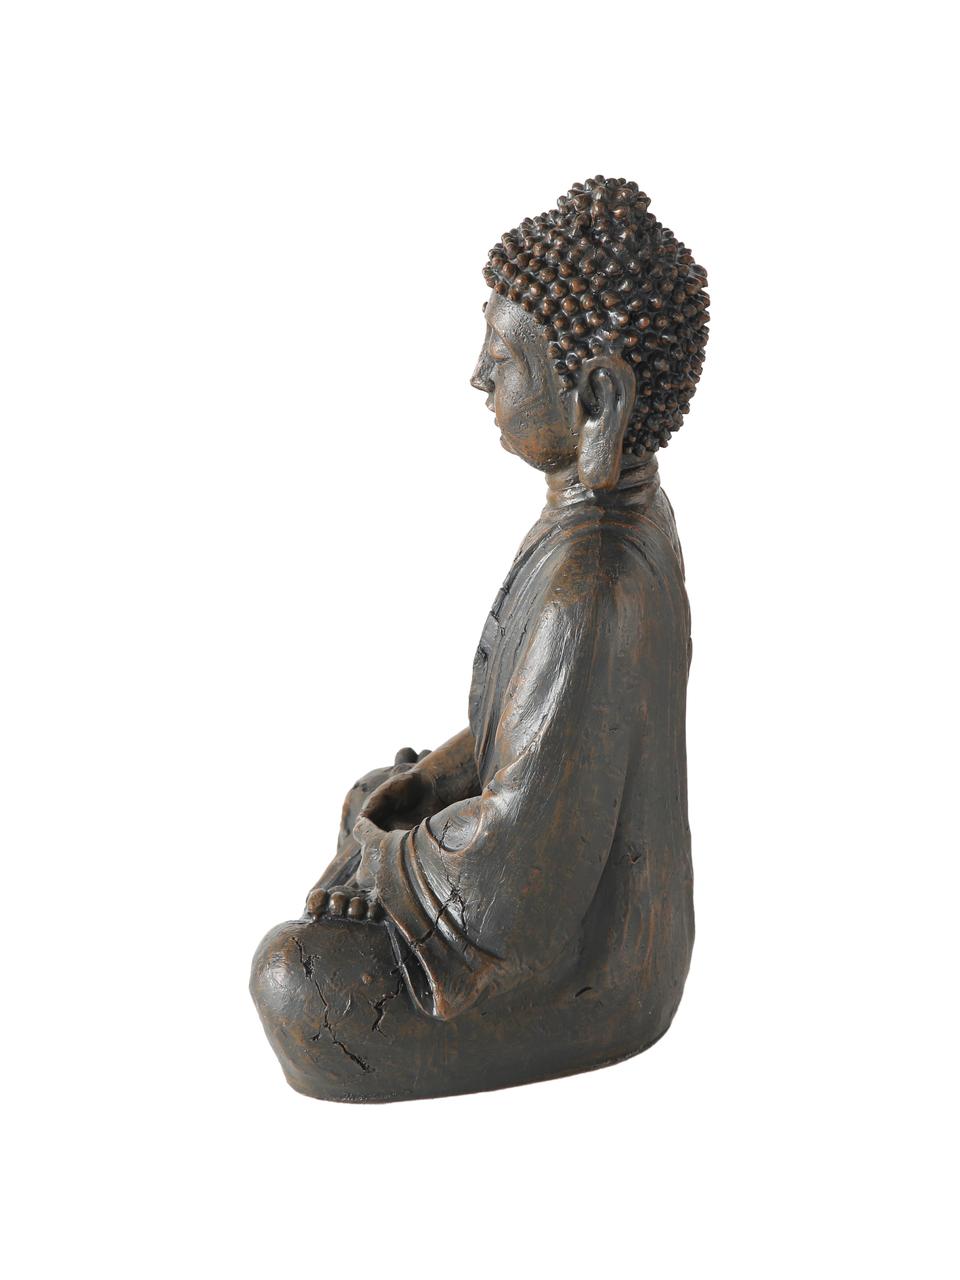 Dekoracja Buddha, Tworzywo sztuczne, Ciemnobrązowy, S 19 x W 30 cm